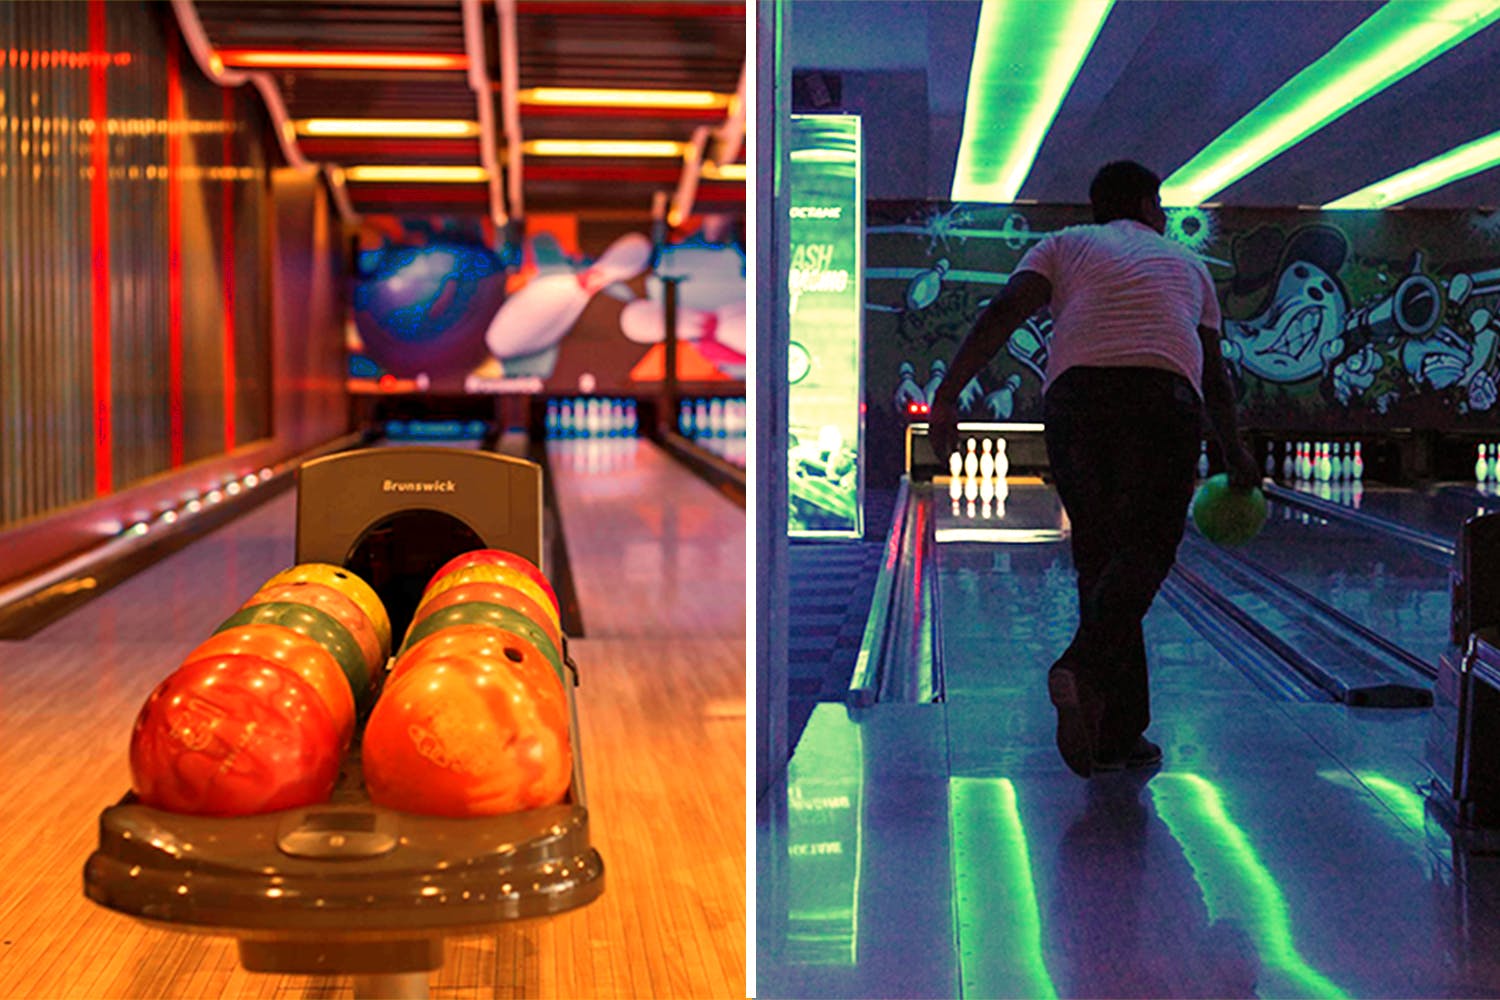 Bowling,Ten-pin bowling,Bowling equipment,Duckpin bowling,Ball,Bowling ball,Bowling pin,Individual sports,Fun,Games